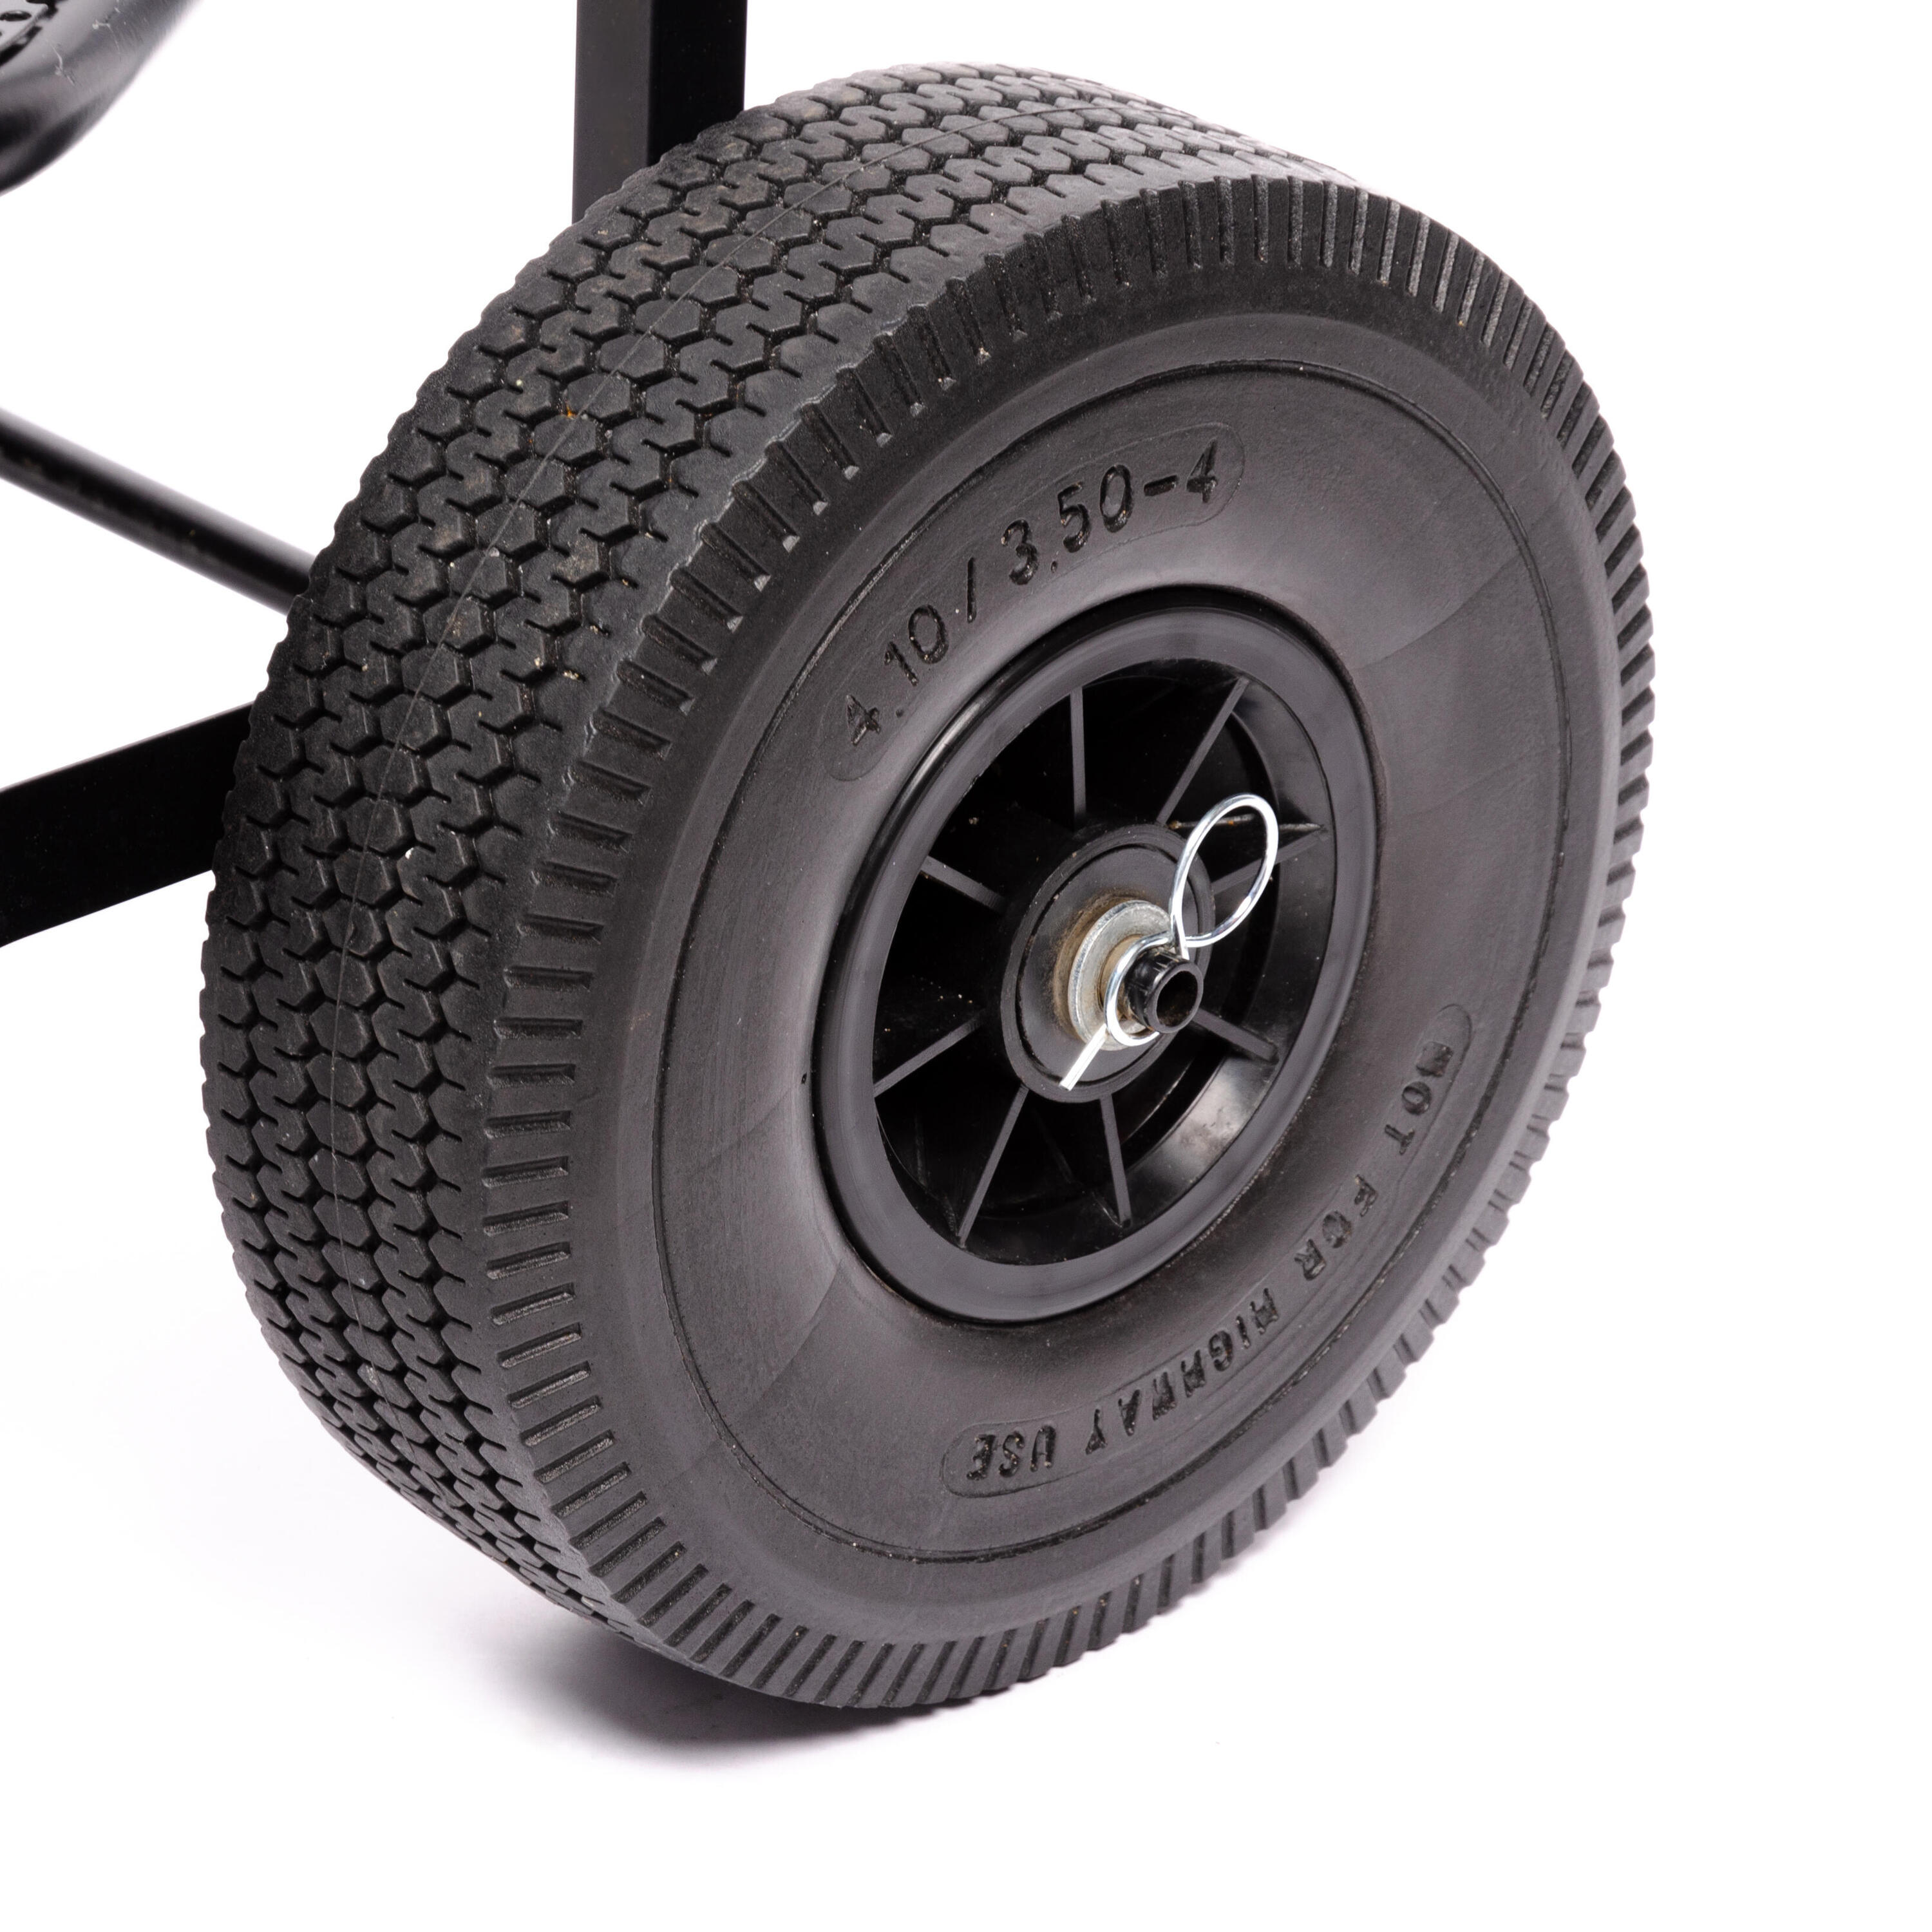 запасное колесо одинарной тележки для гольфа inesis 26 см Запасное колесо для тележки Caperlan